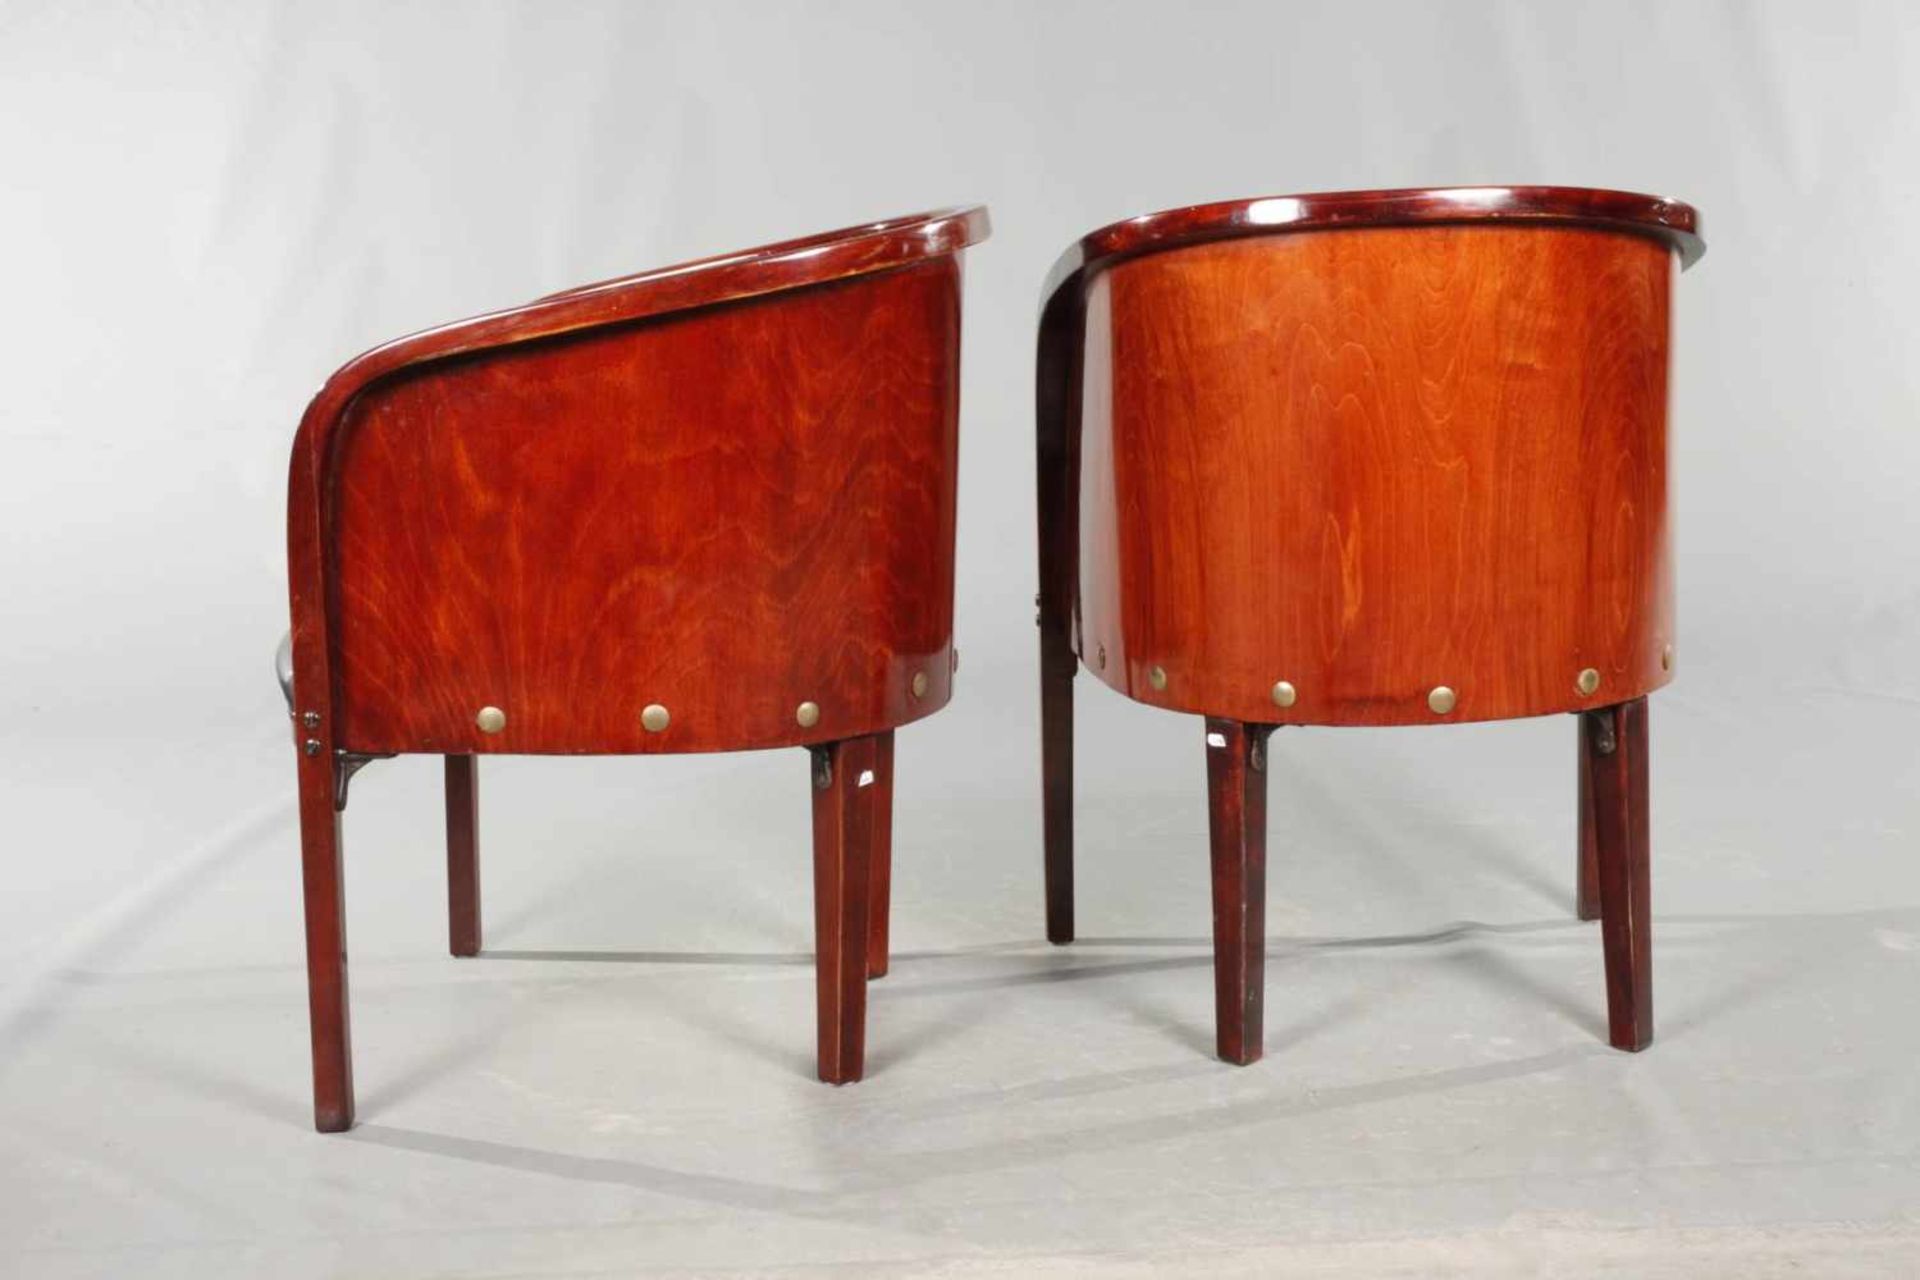 Paar Sessel Kohn 'W 795'um 1915, Variante nach einem Entwurf von Josef Hoffmann, Zarge mit - Bild 3 aus 5